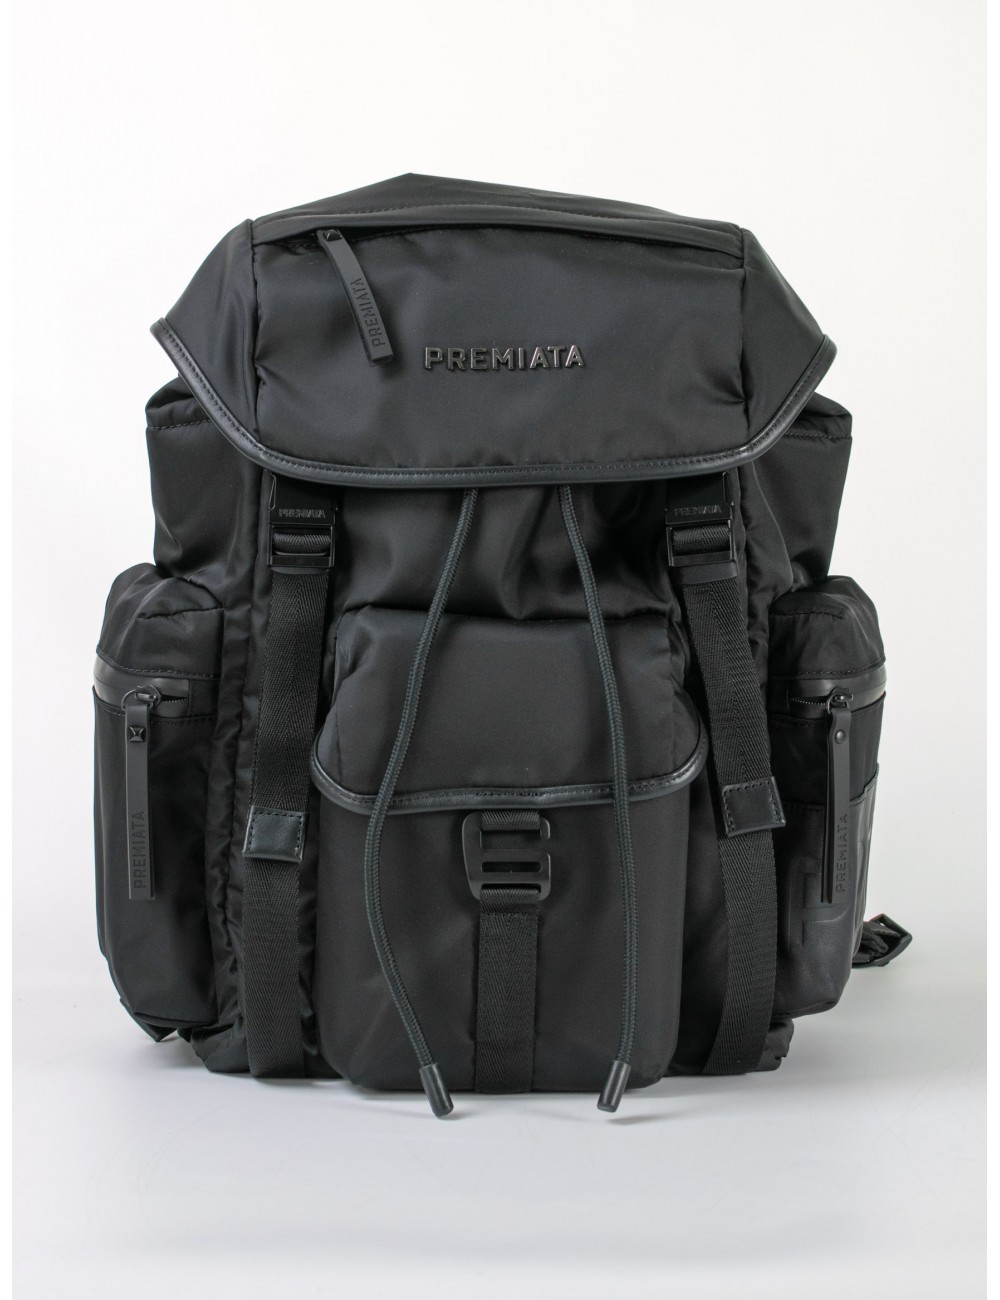 backpack-premiata-premiata-2.jpg